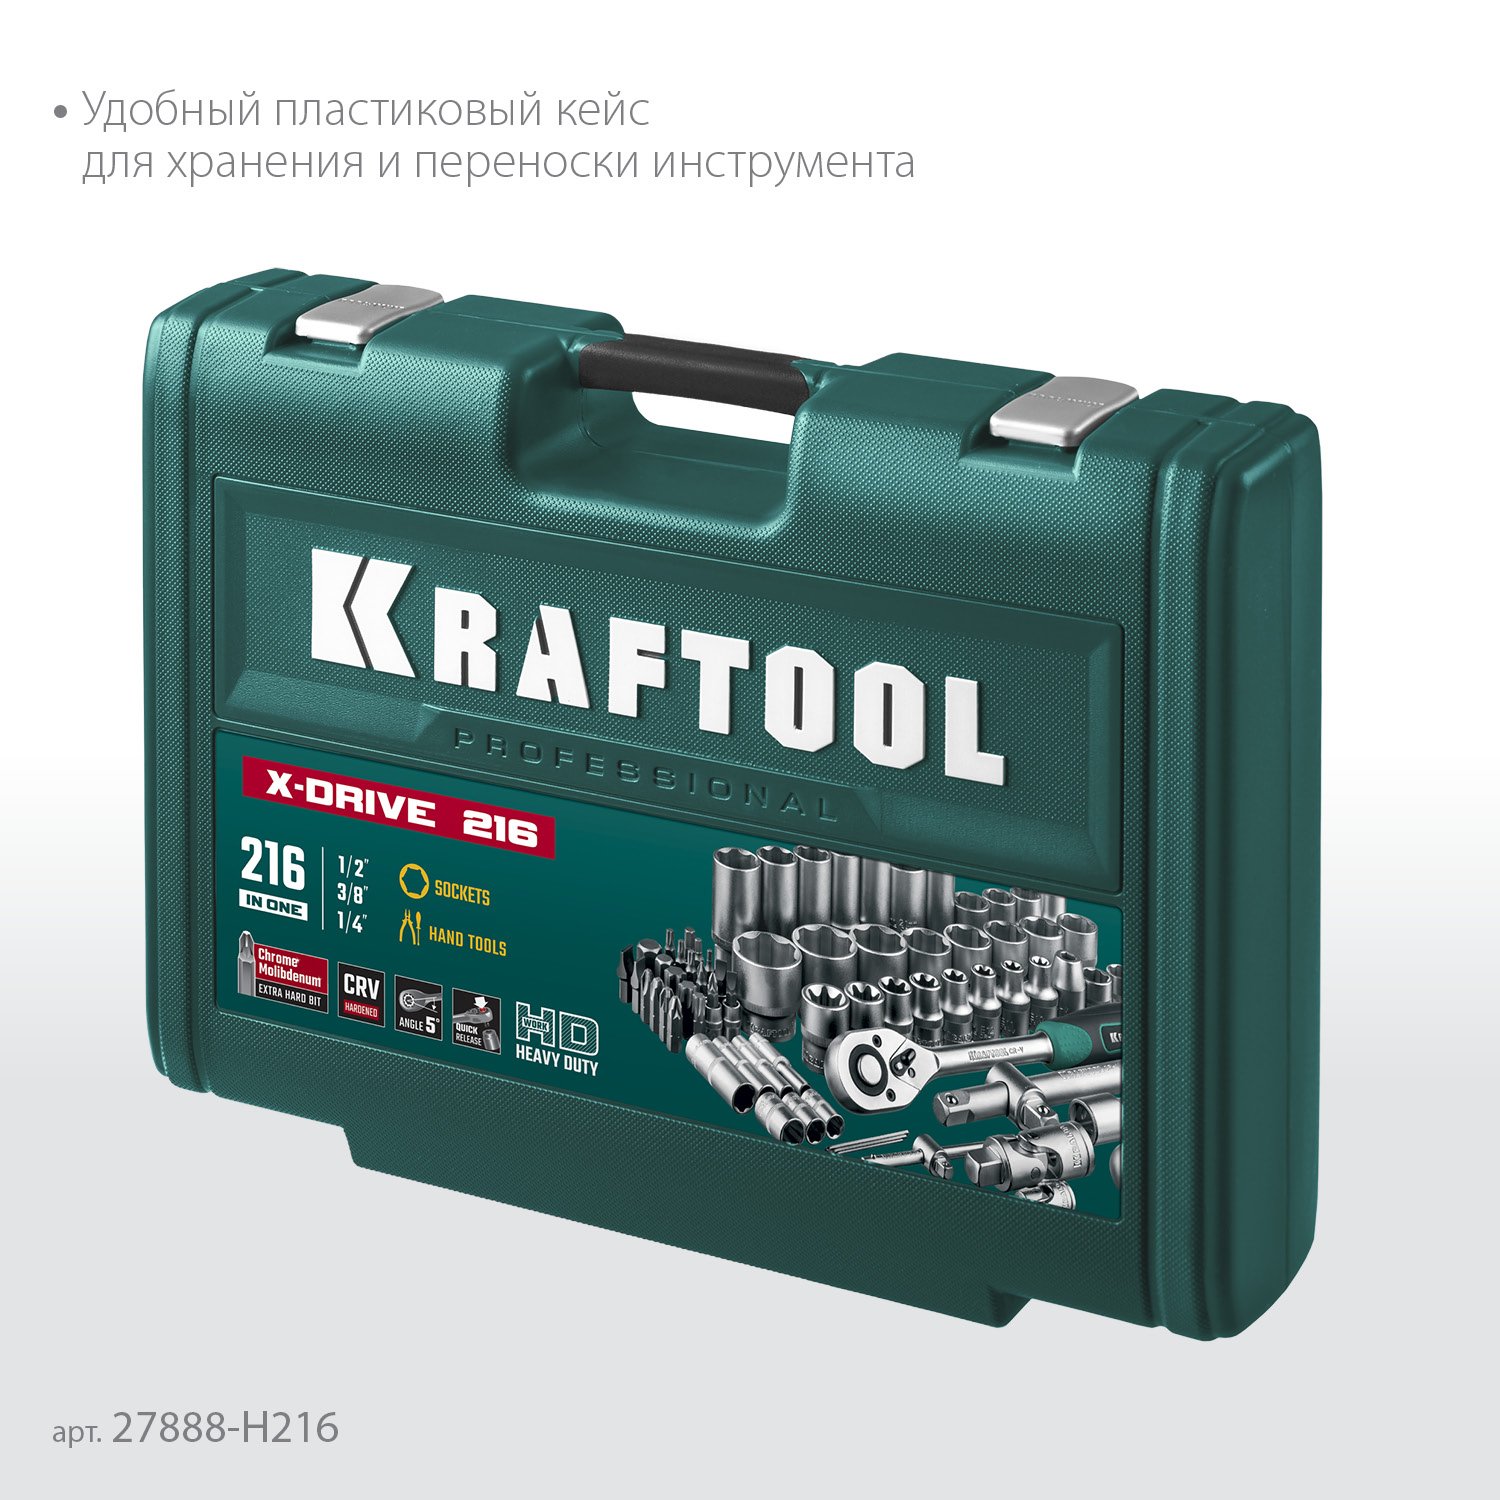 KRAFTOOL X Drive, 216 предм., (1 2 +3 8 +1 4 ), Универсальный набор инструмента (27888-H216) (27888-H216)